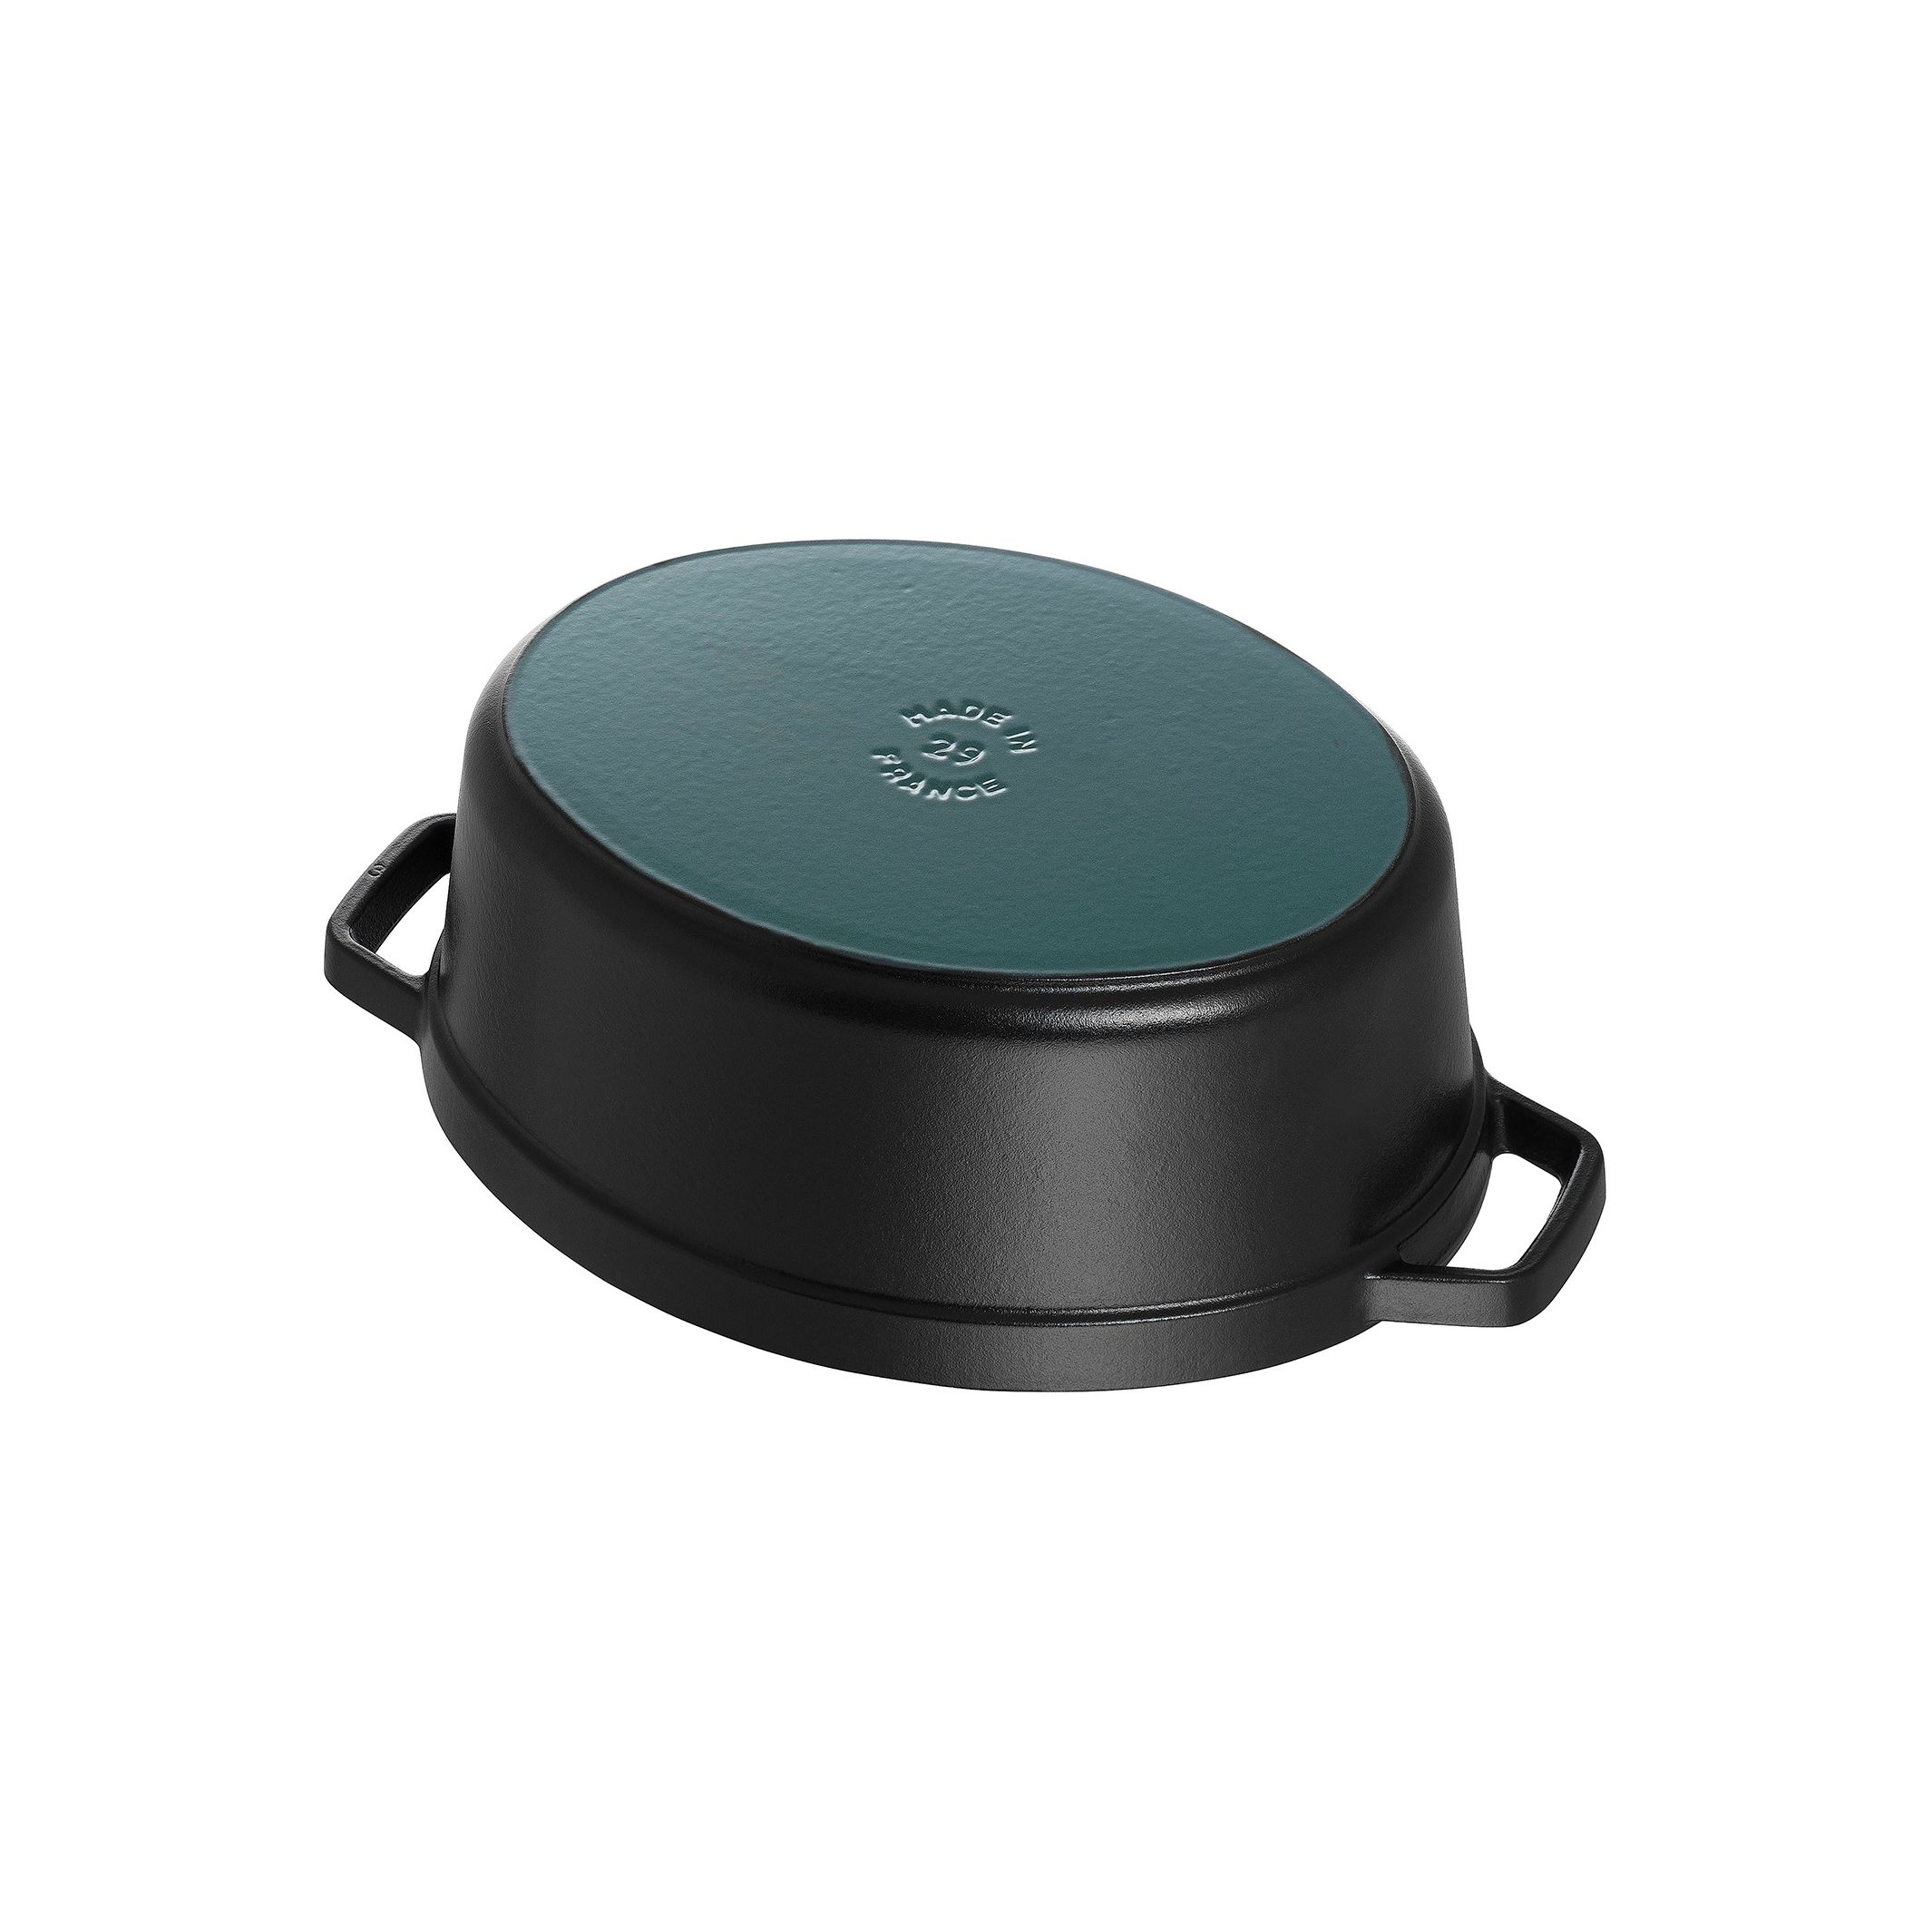 Staub Cast Iron Oval Cocotte, Dutch Oven, 5.75-quart, Serves 5-6 Color: Black Matte 1103125